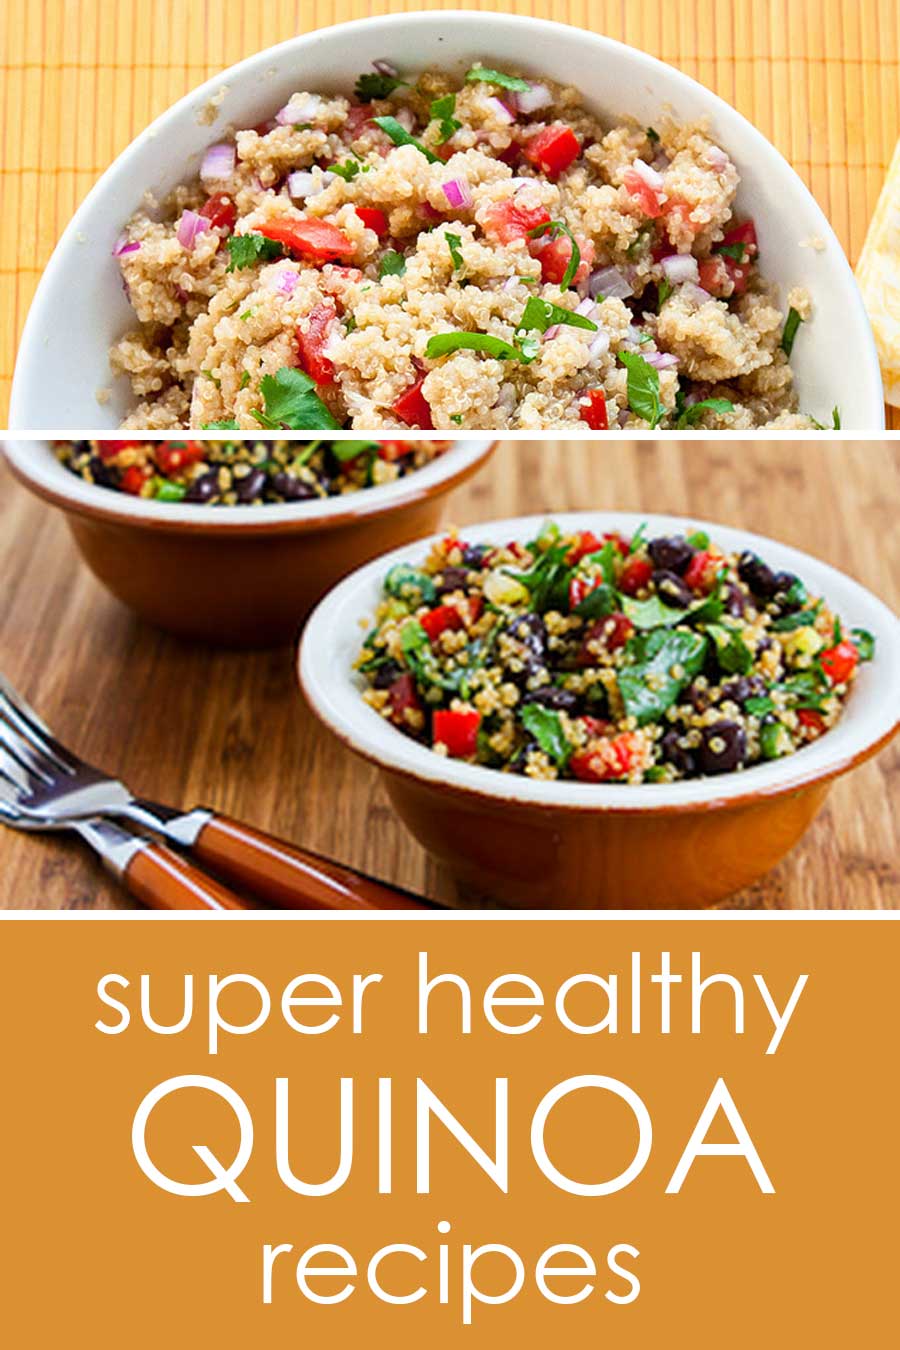 22 Super healthy quinoa recipes